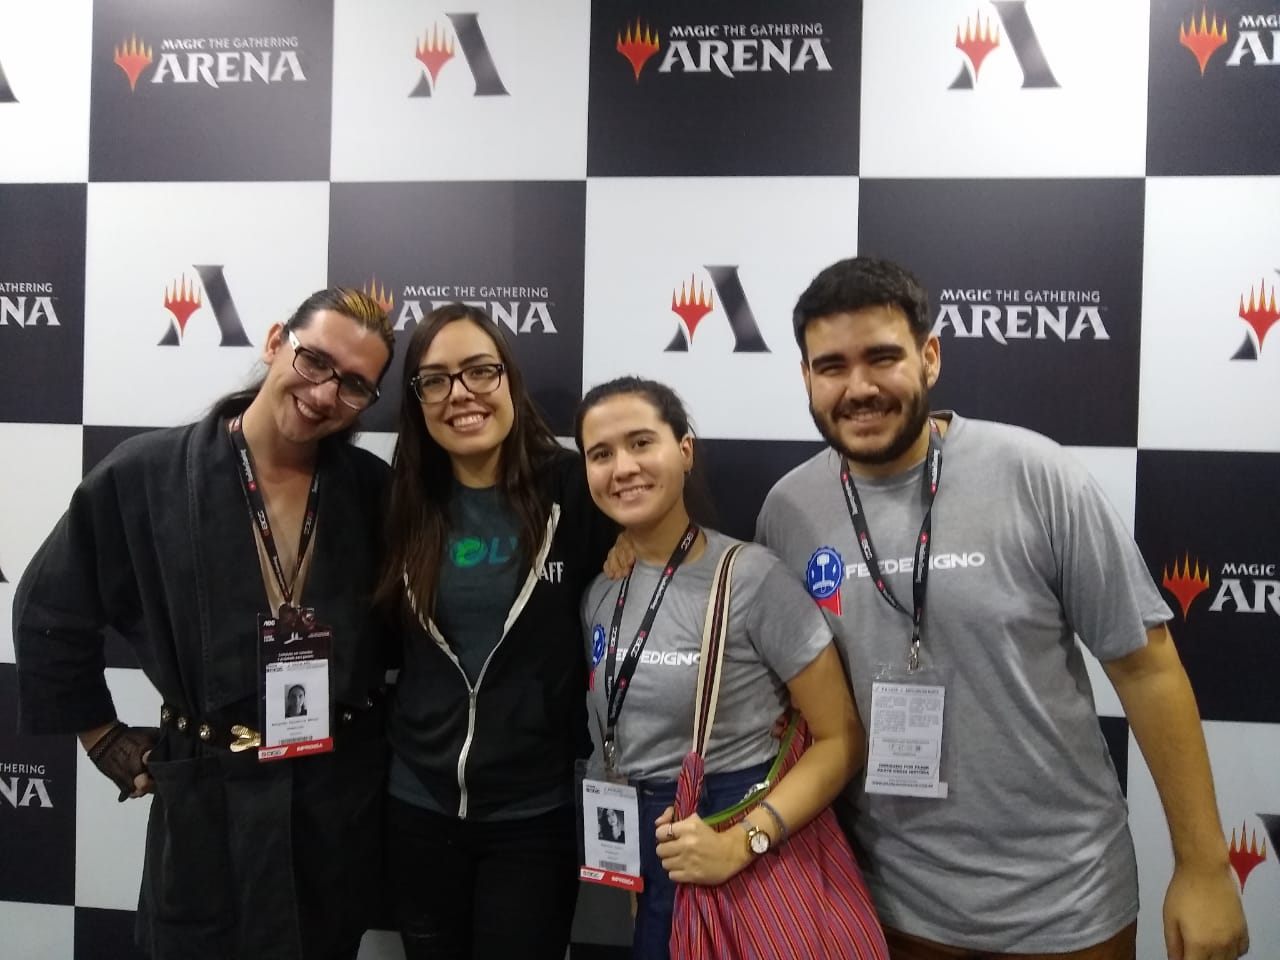 BGS 2019: Entrevista com Annette Escalante da MTG Arena revela um pouco sobre o cenário